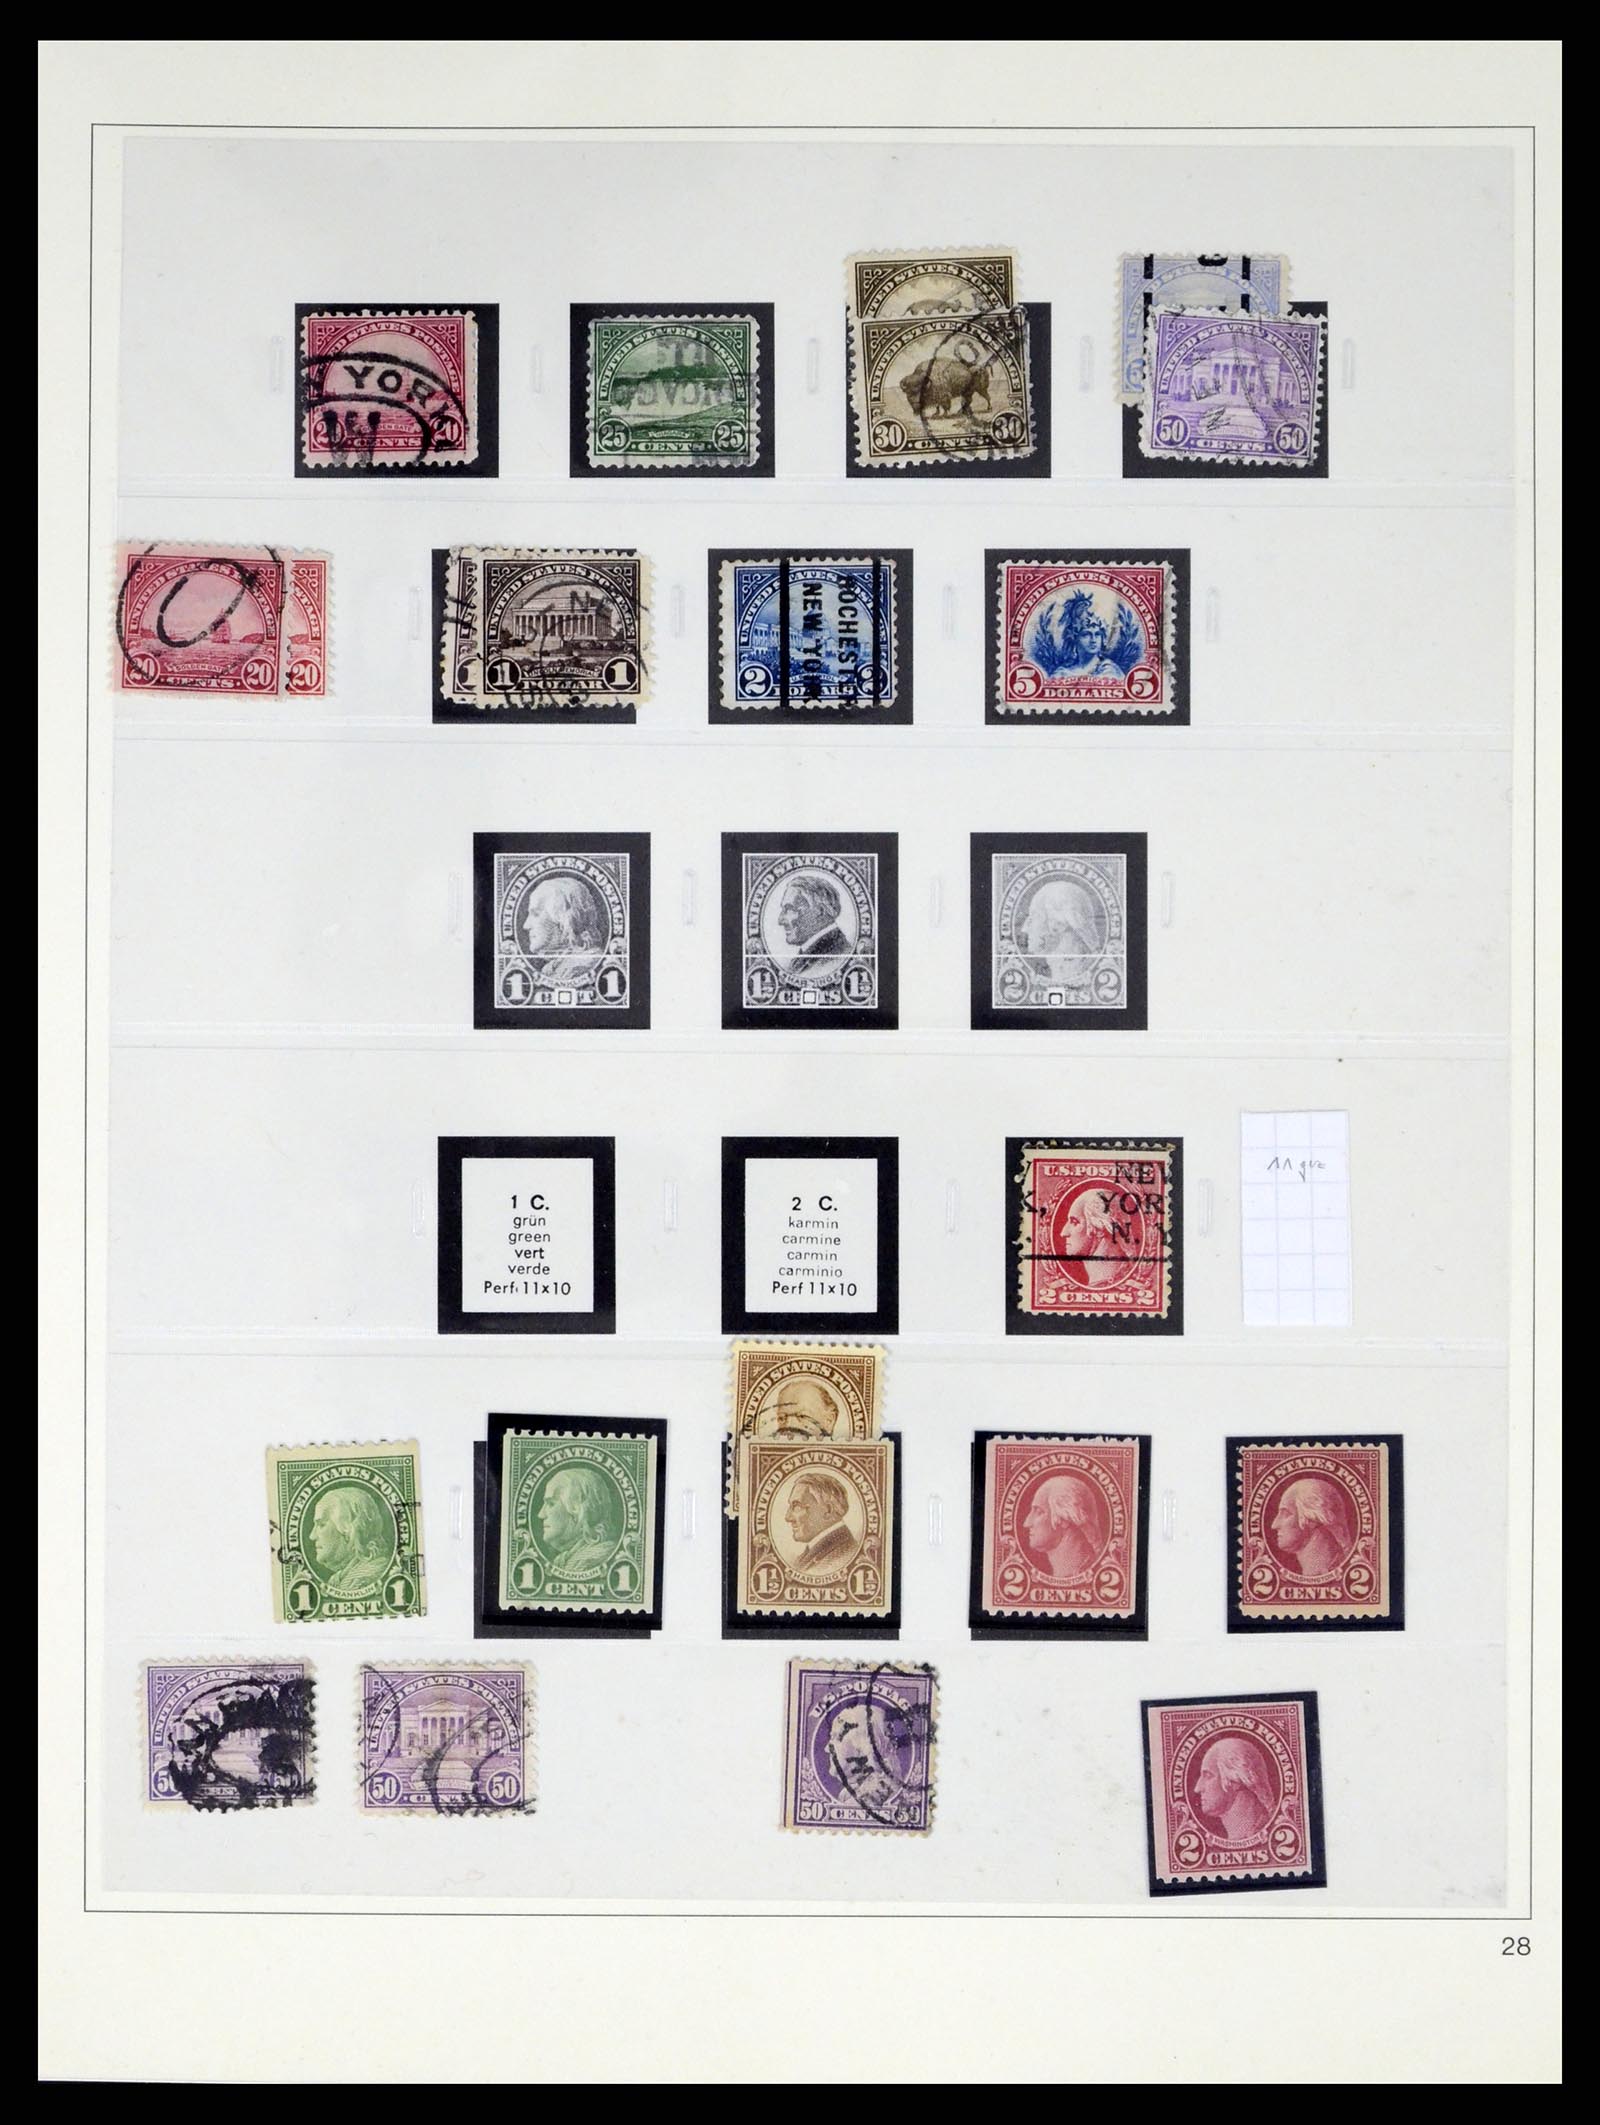 37551 030 - Stamp collection 37551 USA 1851-2001.